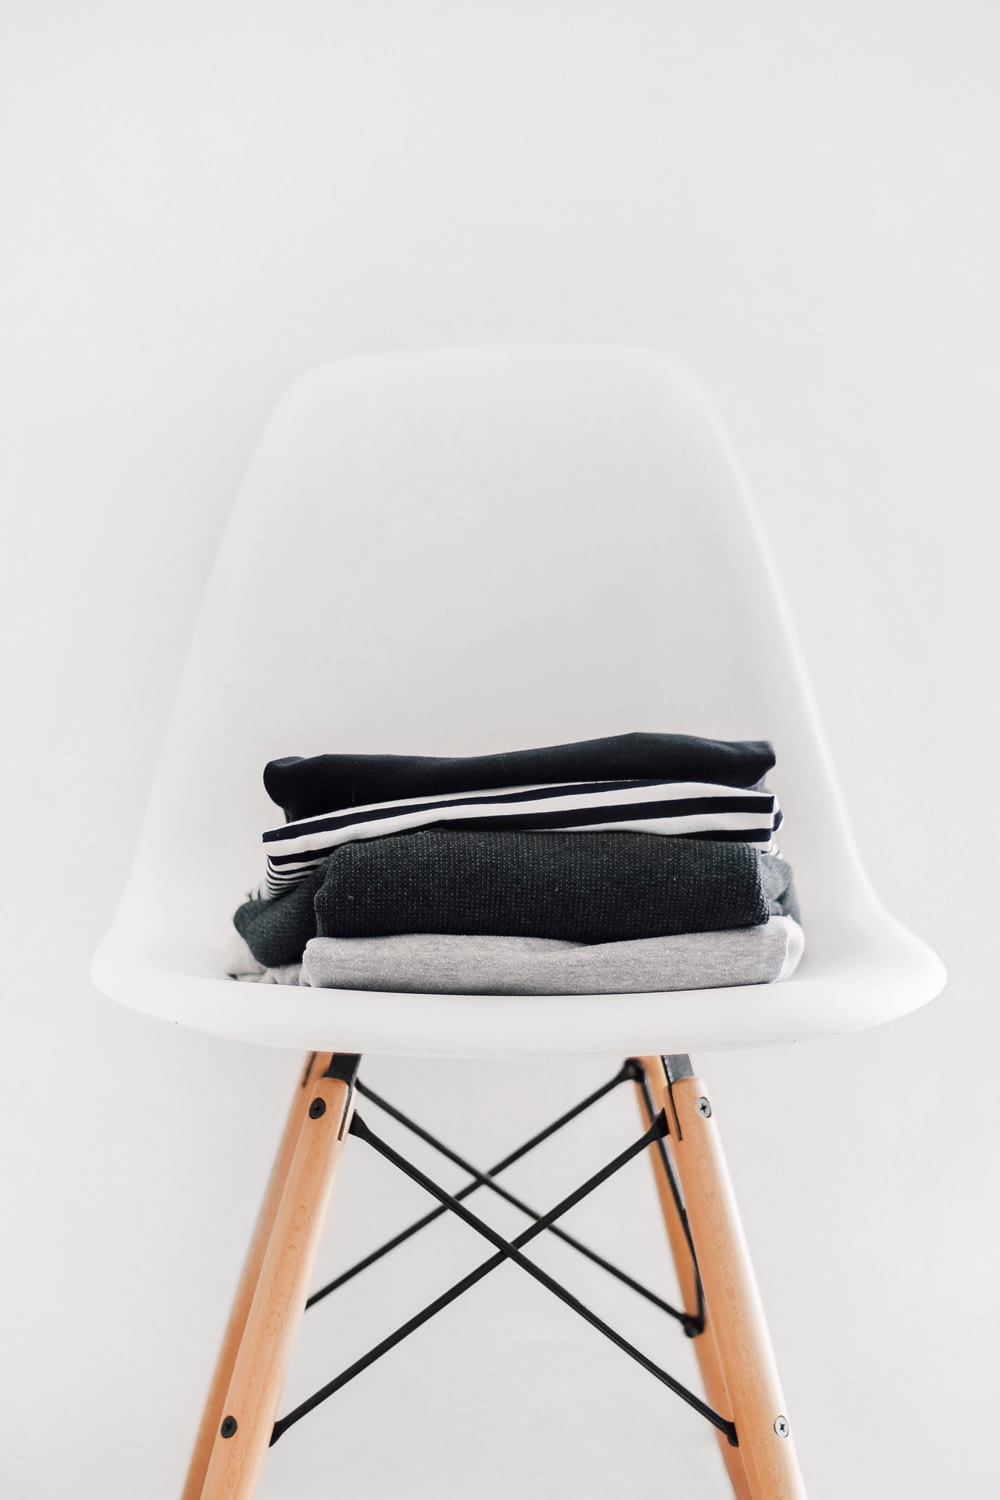 pila de textiles negros, blancos y grises en una silla acolchada blanca con marco marrón